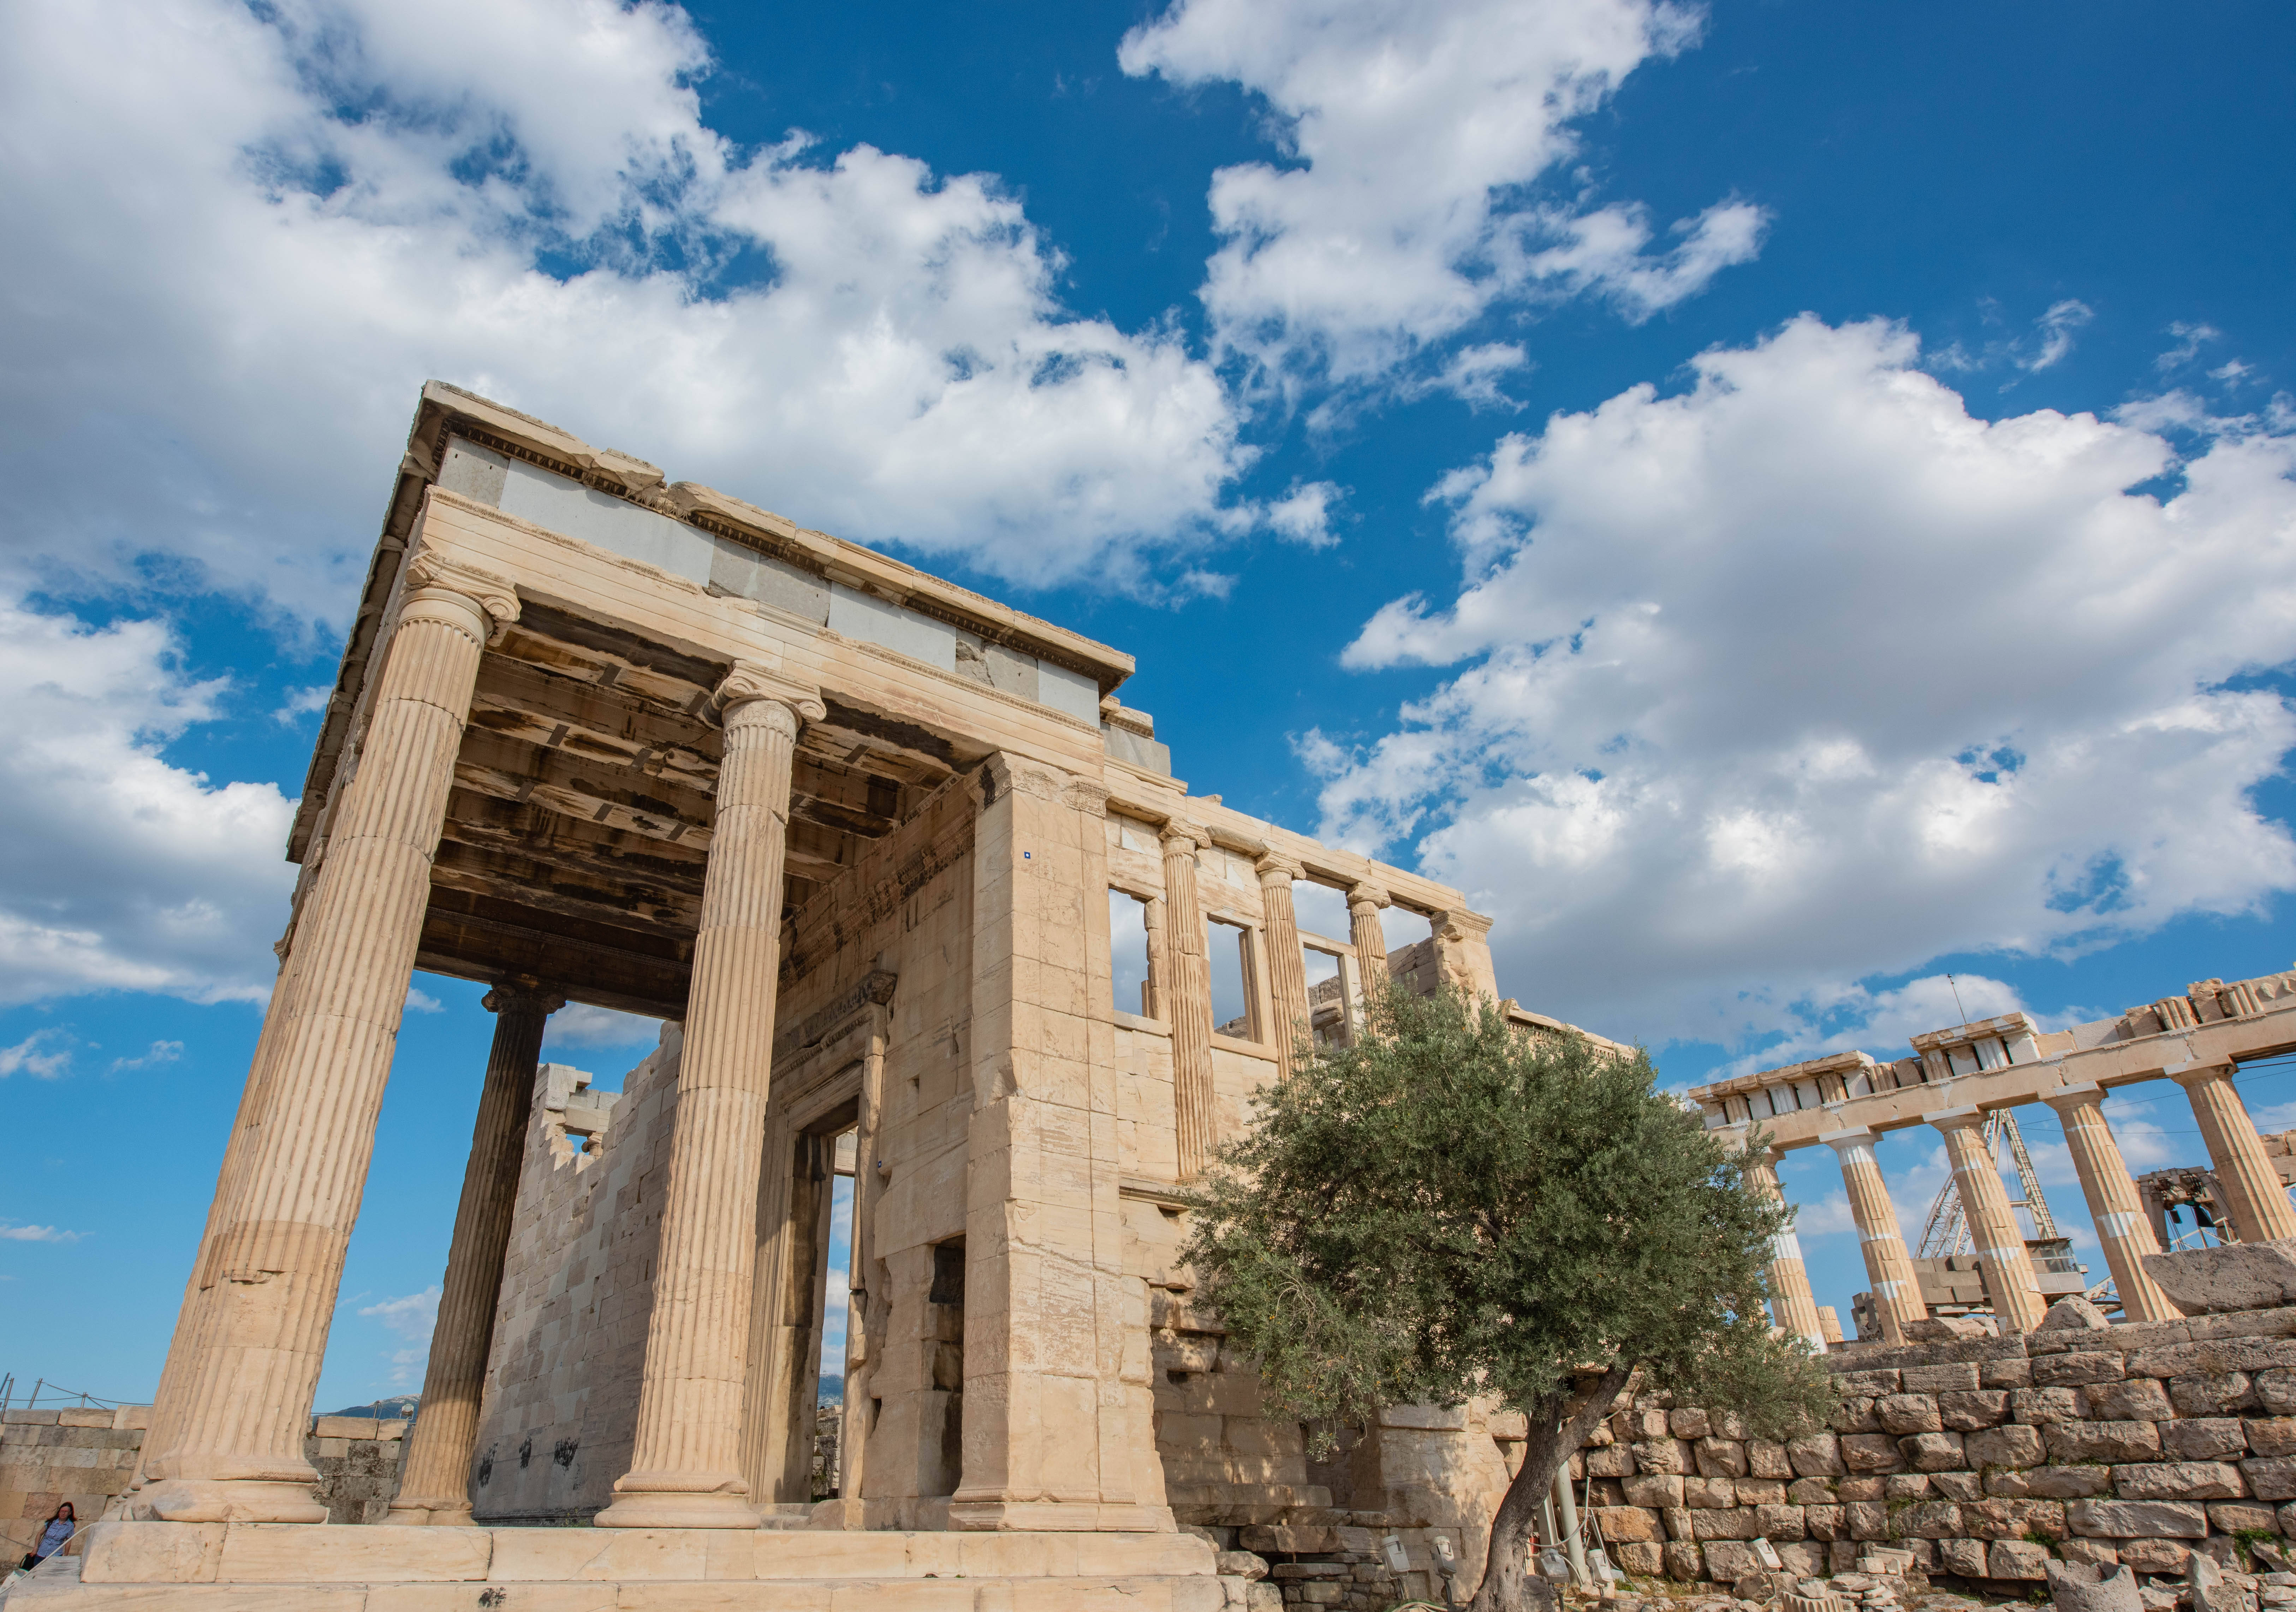 据说始建于公元前580年,集古希腊建筑与雕刻艺术之大成